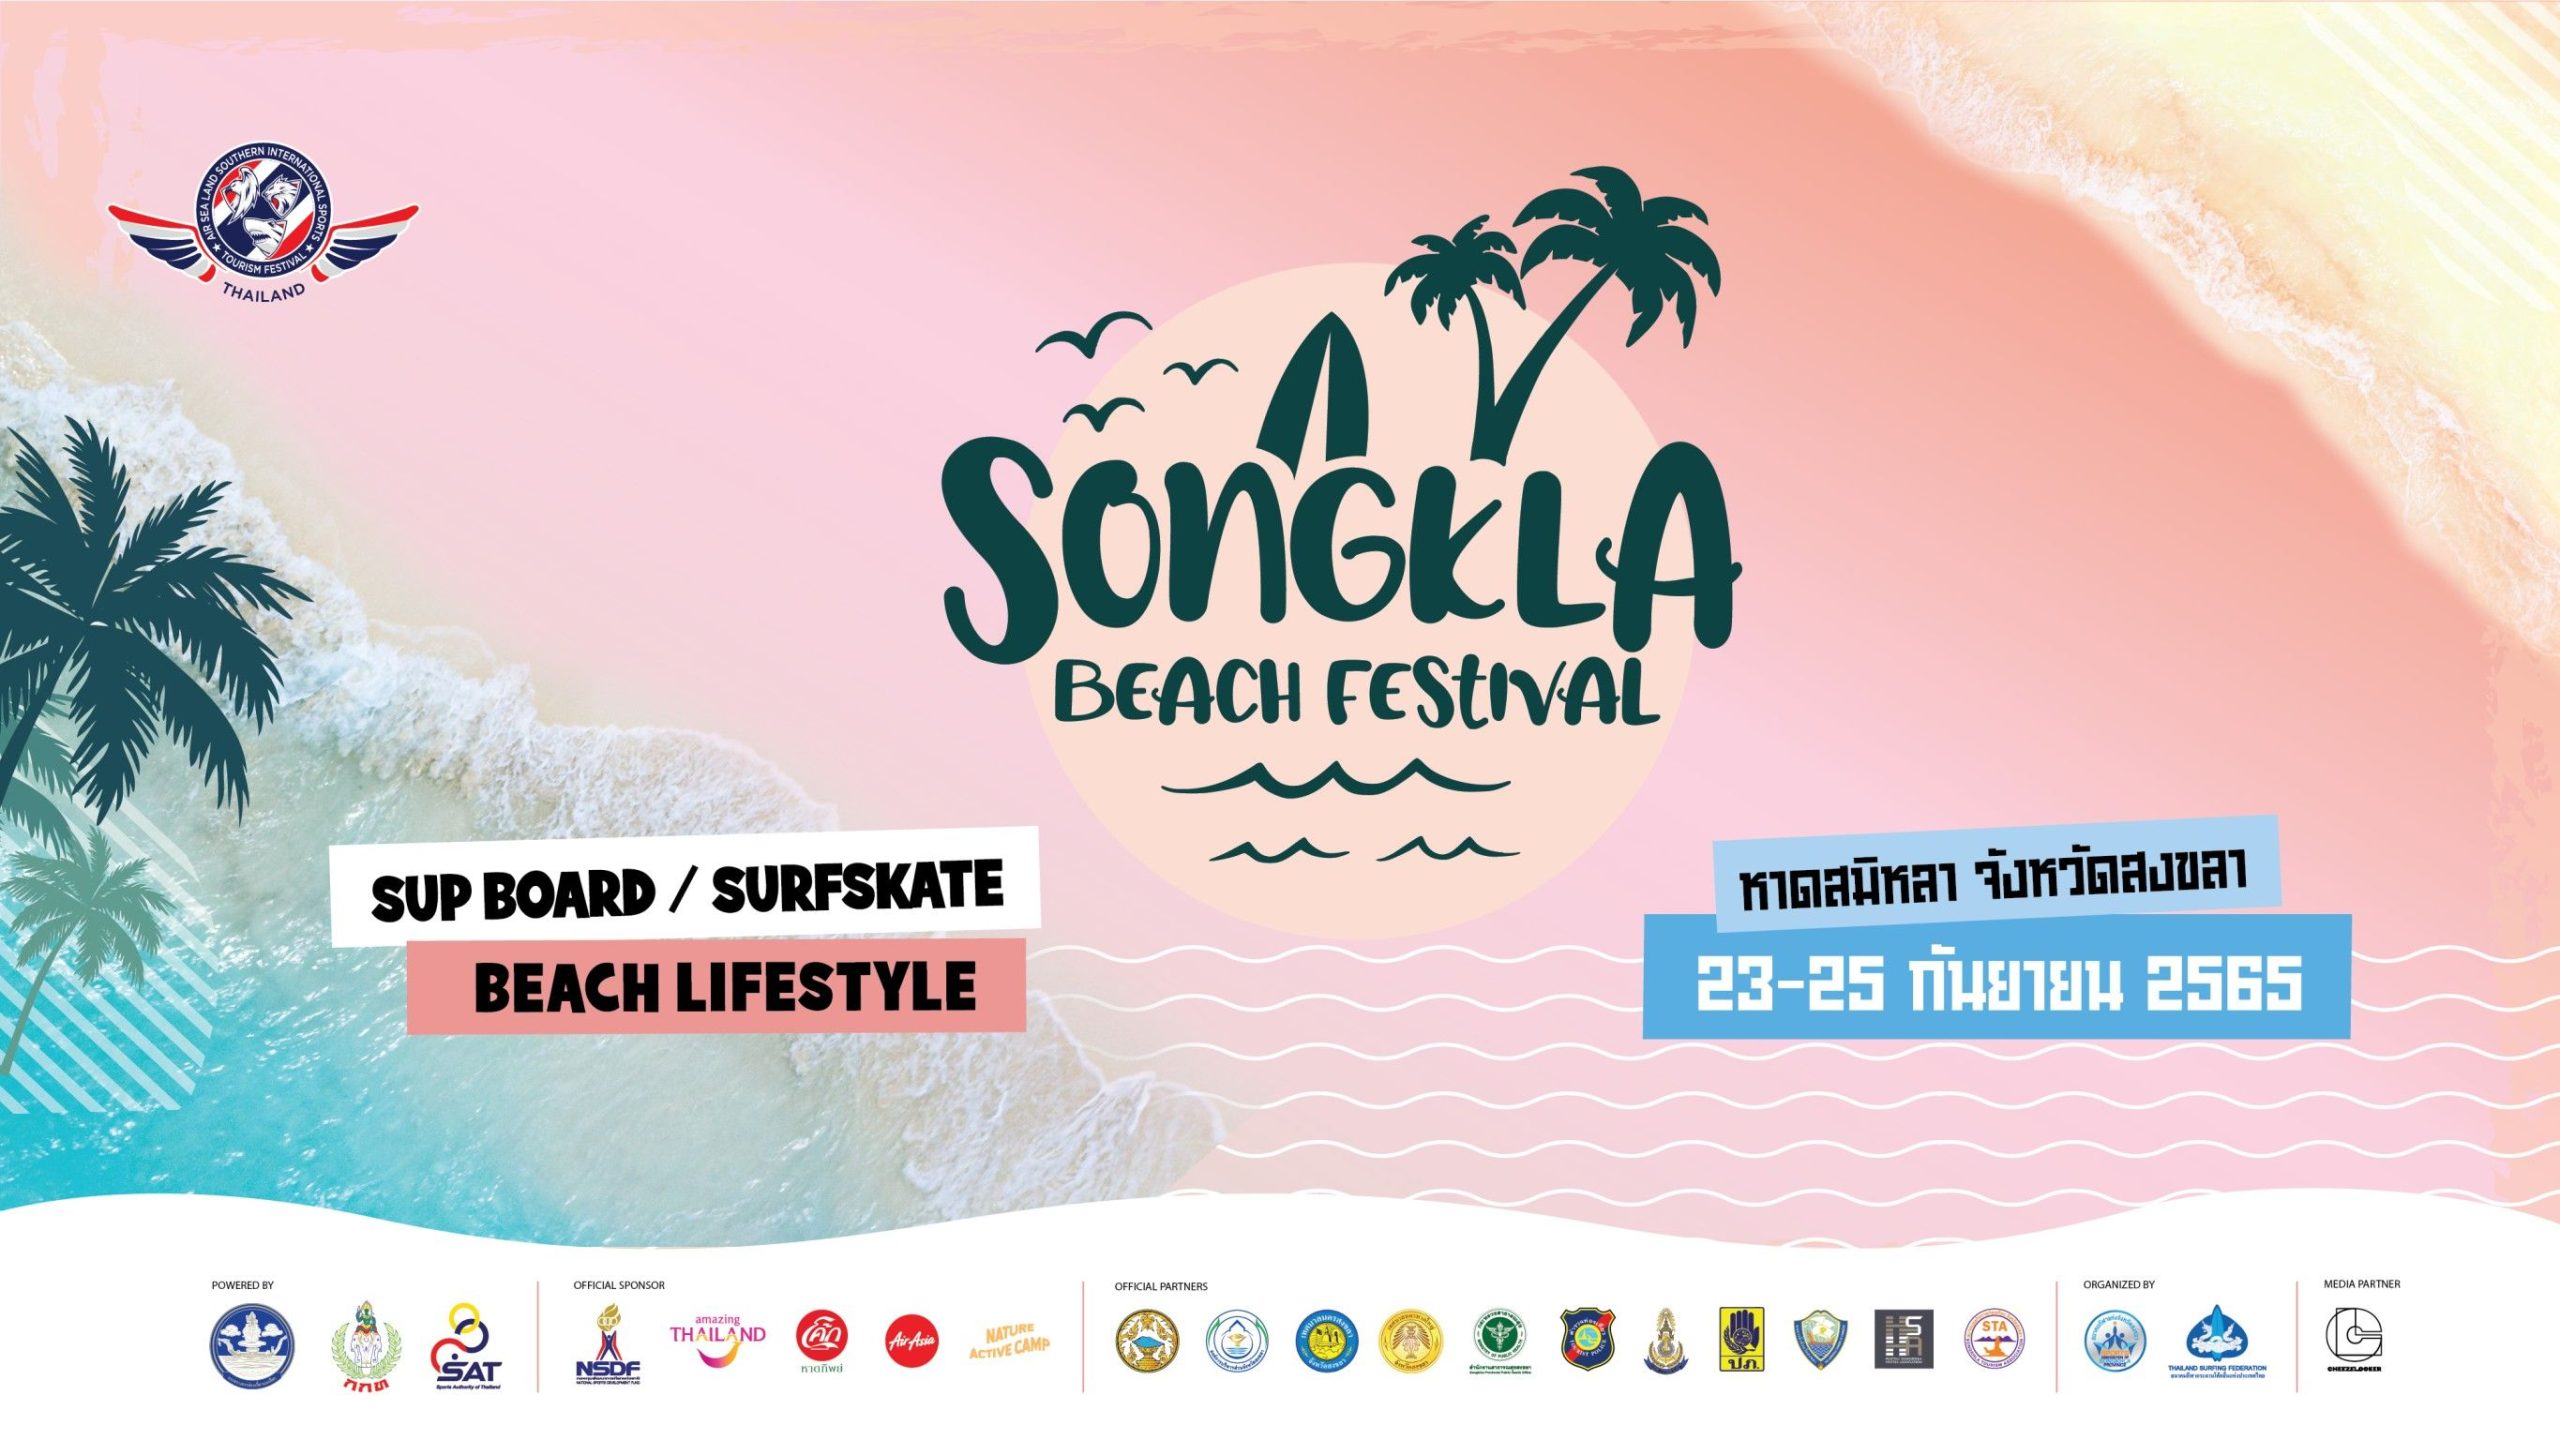 SONGKLA-BEACH-FESTIVAL-2022-scaled.jpg